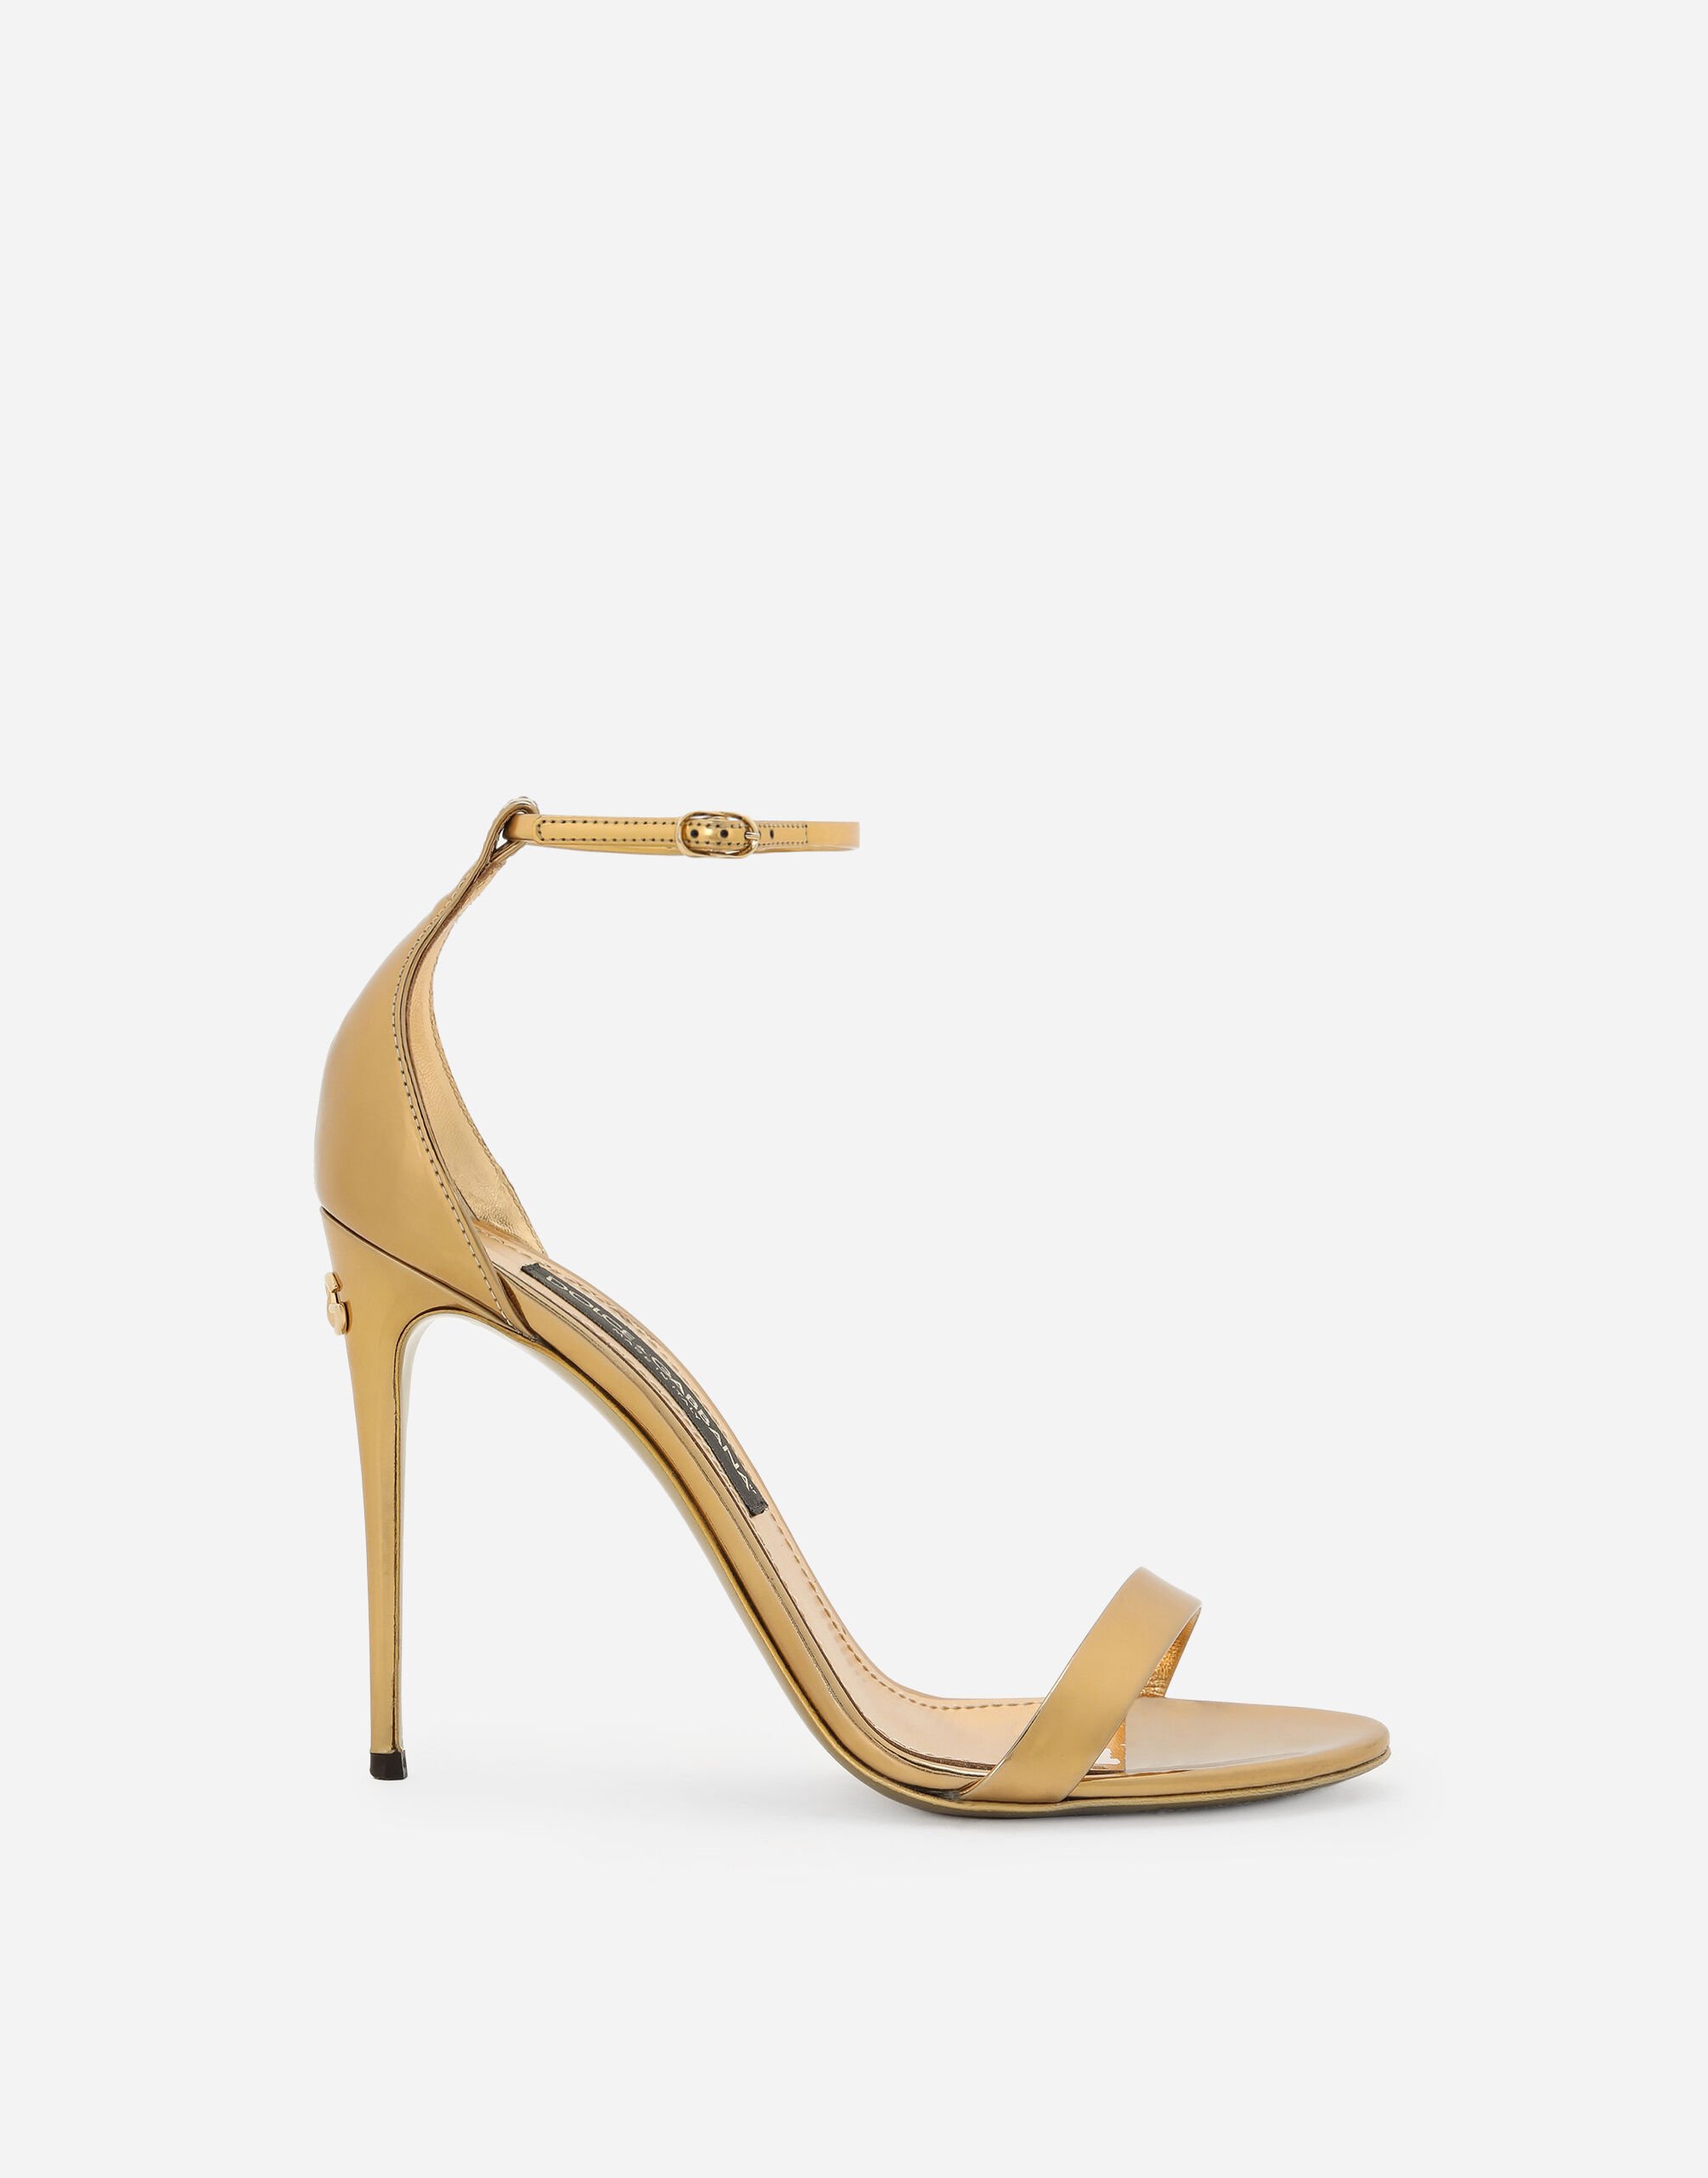 Dolce & Gabbana Mirrored-effect calfskin sandals Print CR1751AV885